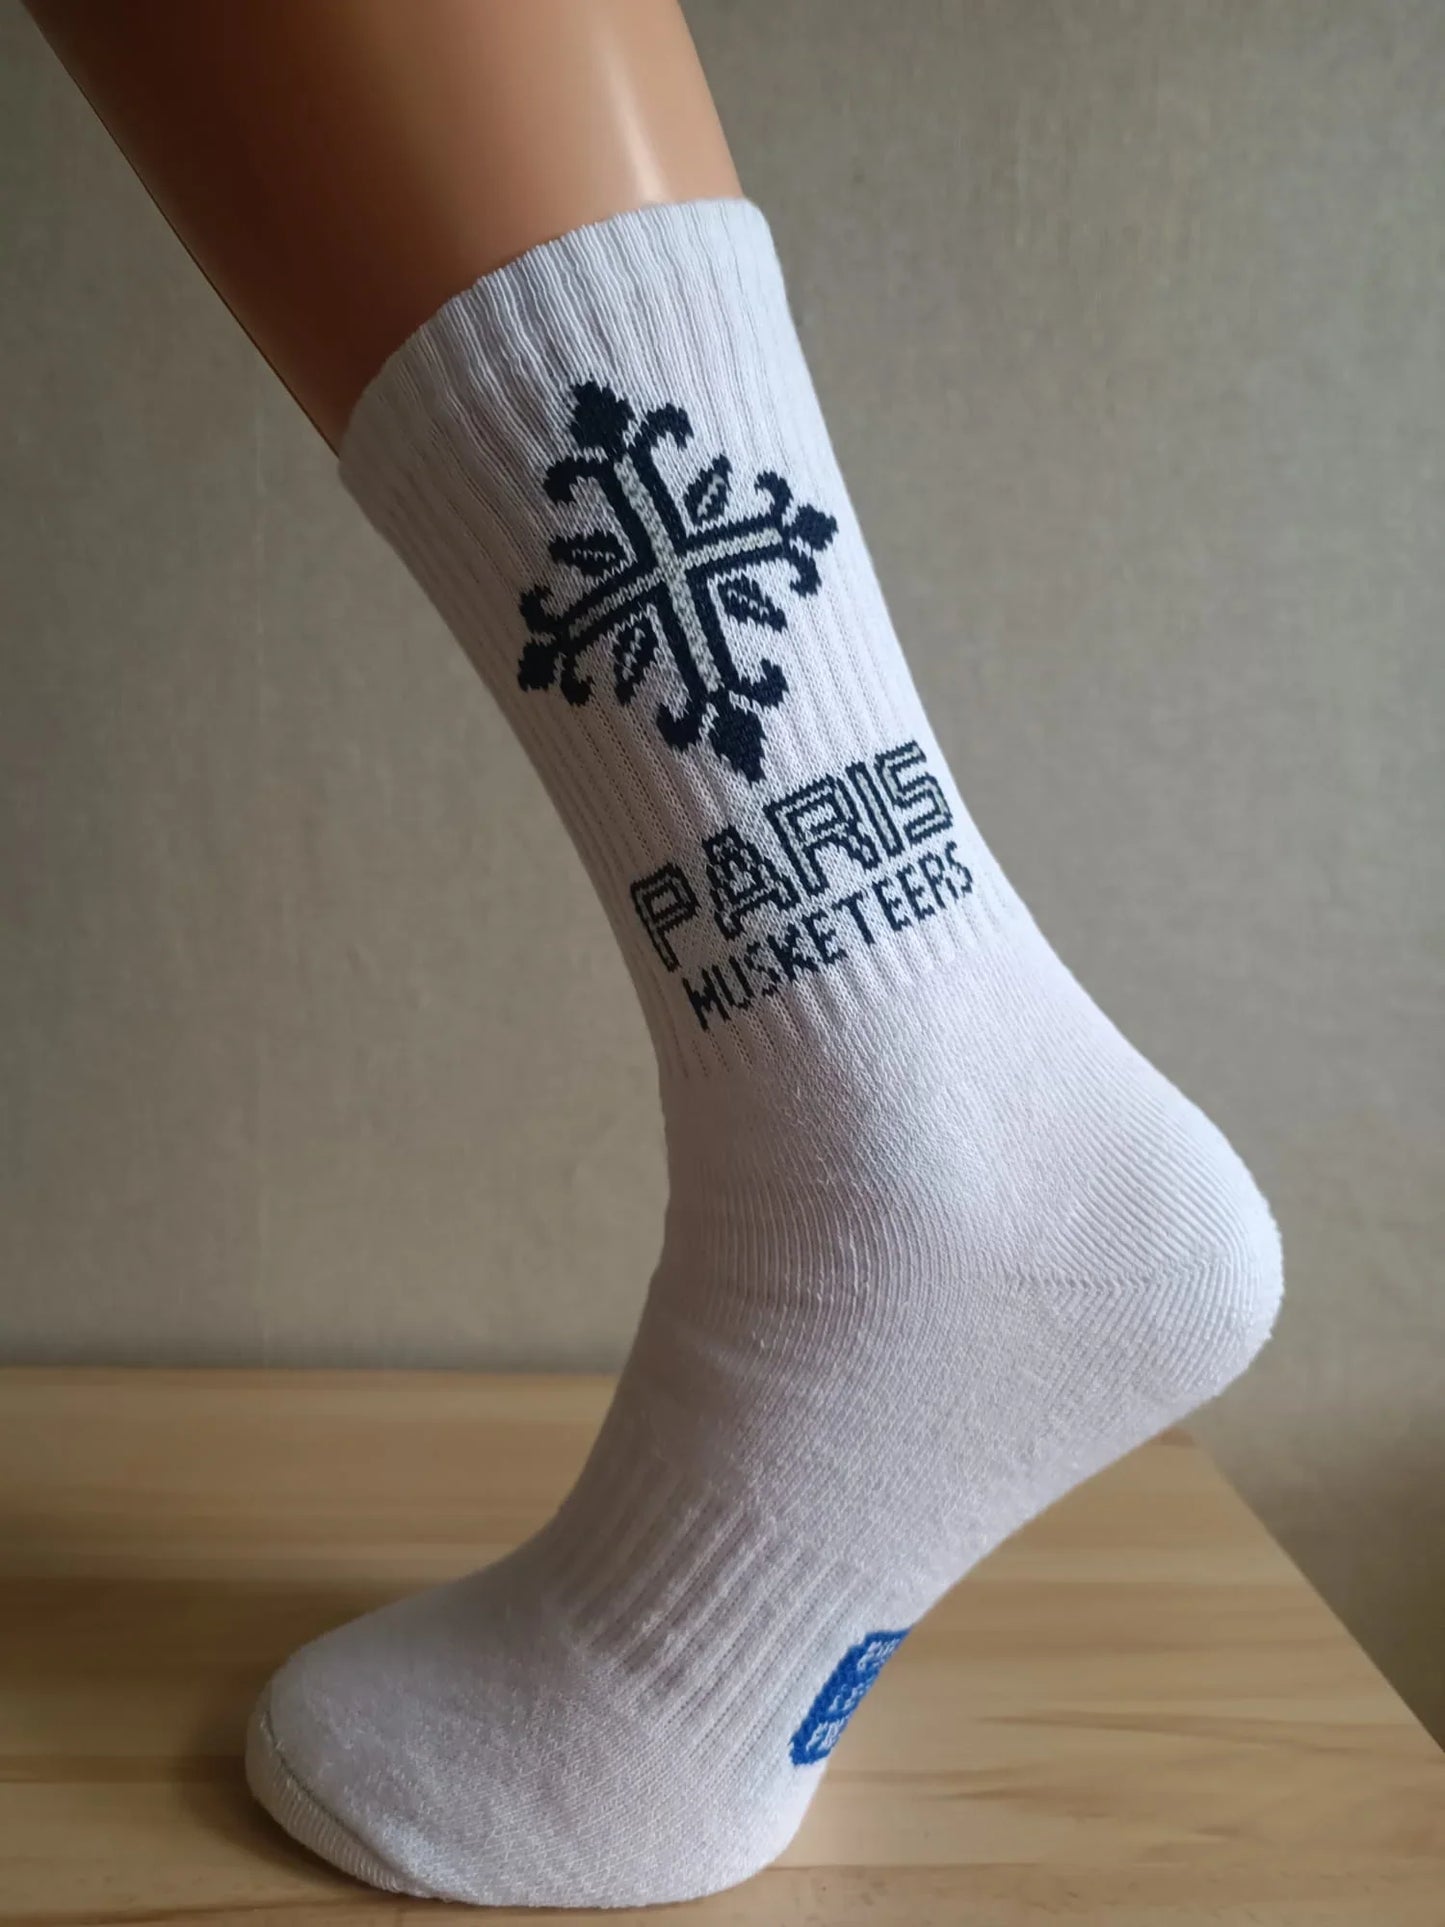 Official Socks